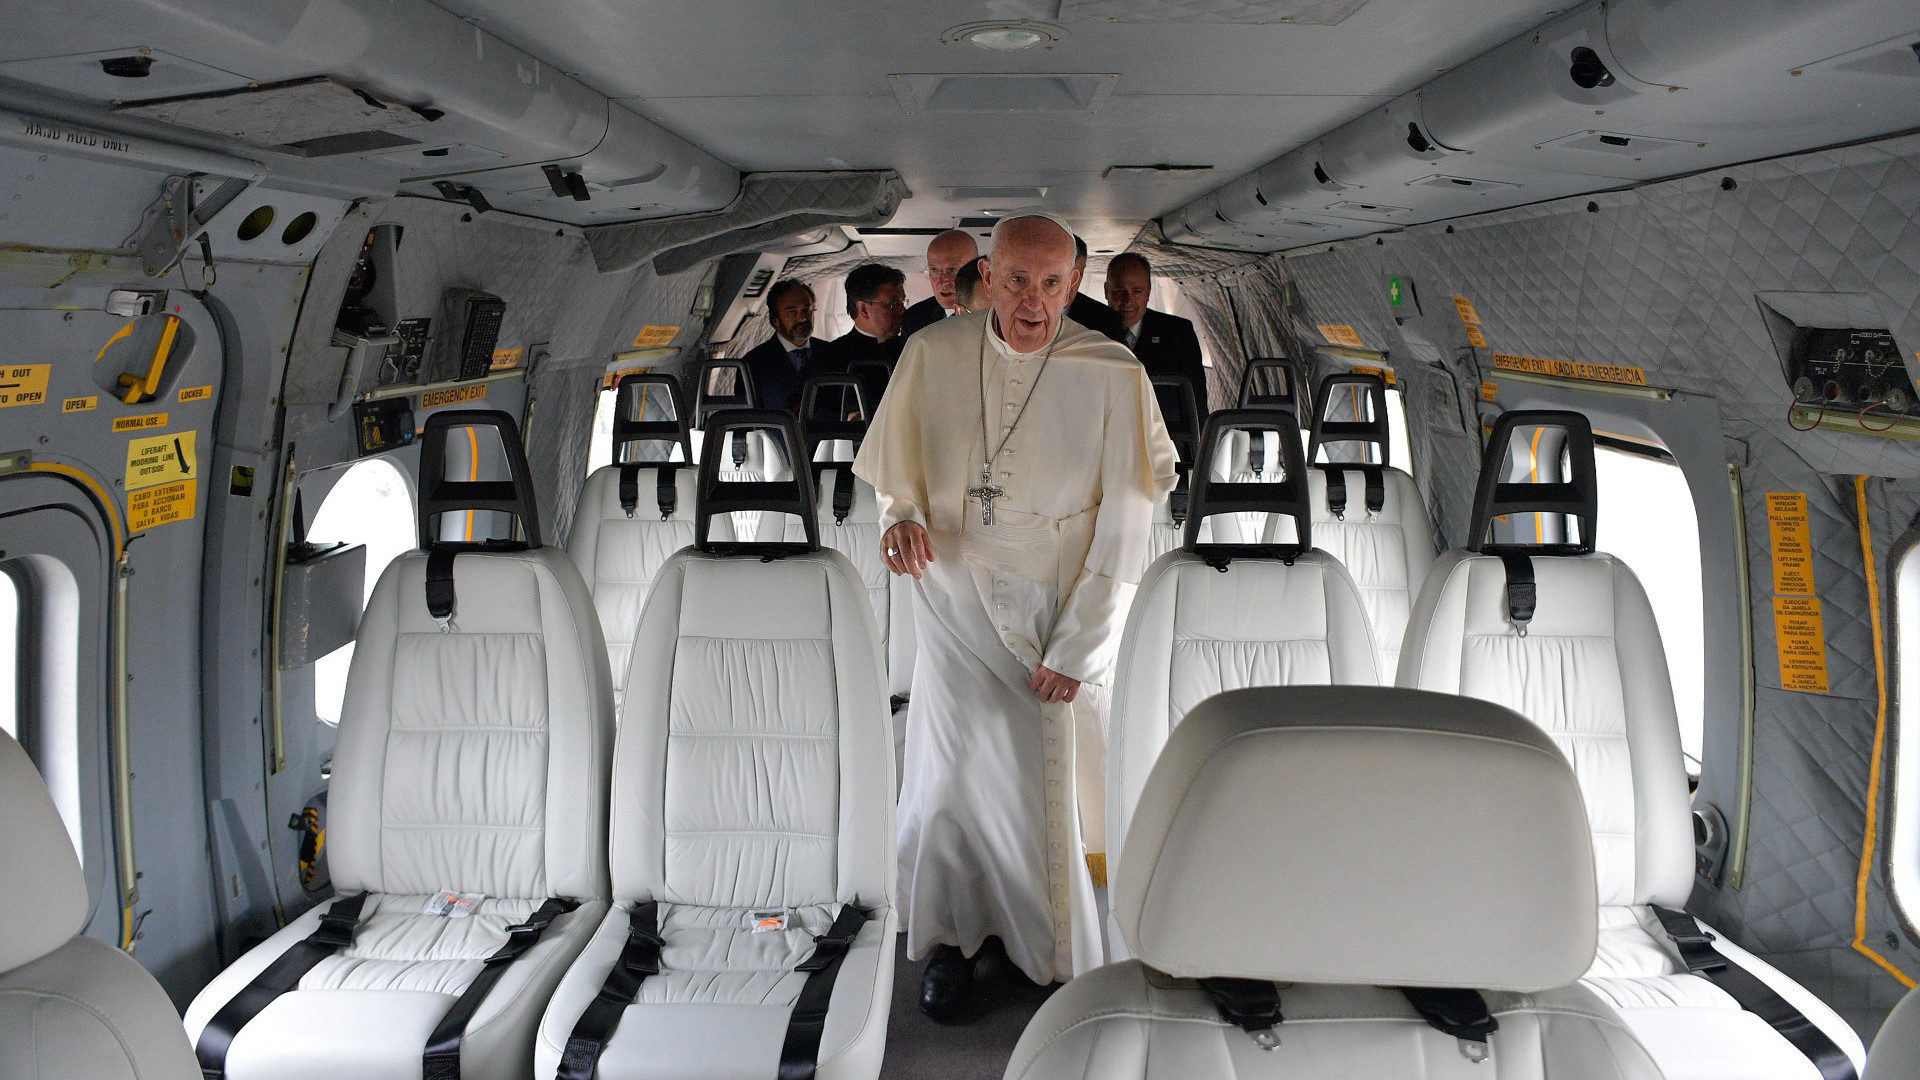 Papst Franziskus auf Reisen.